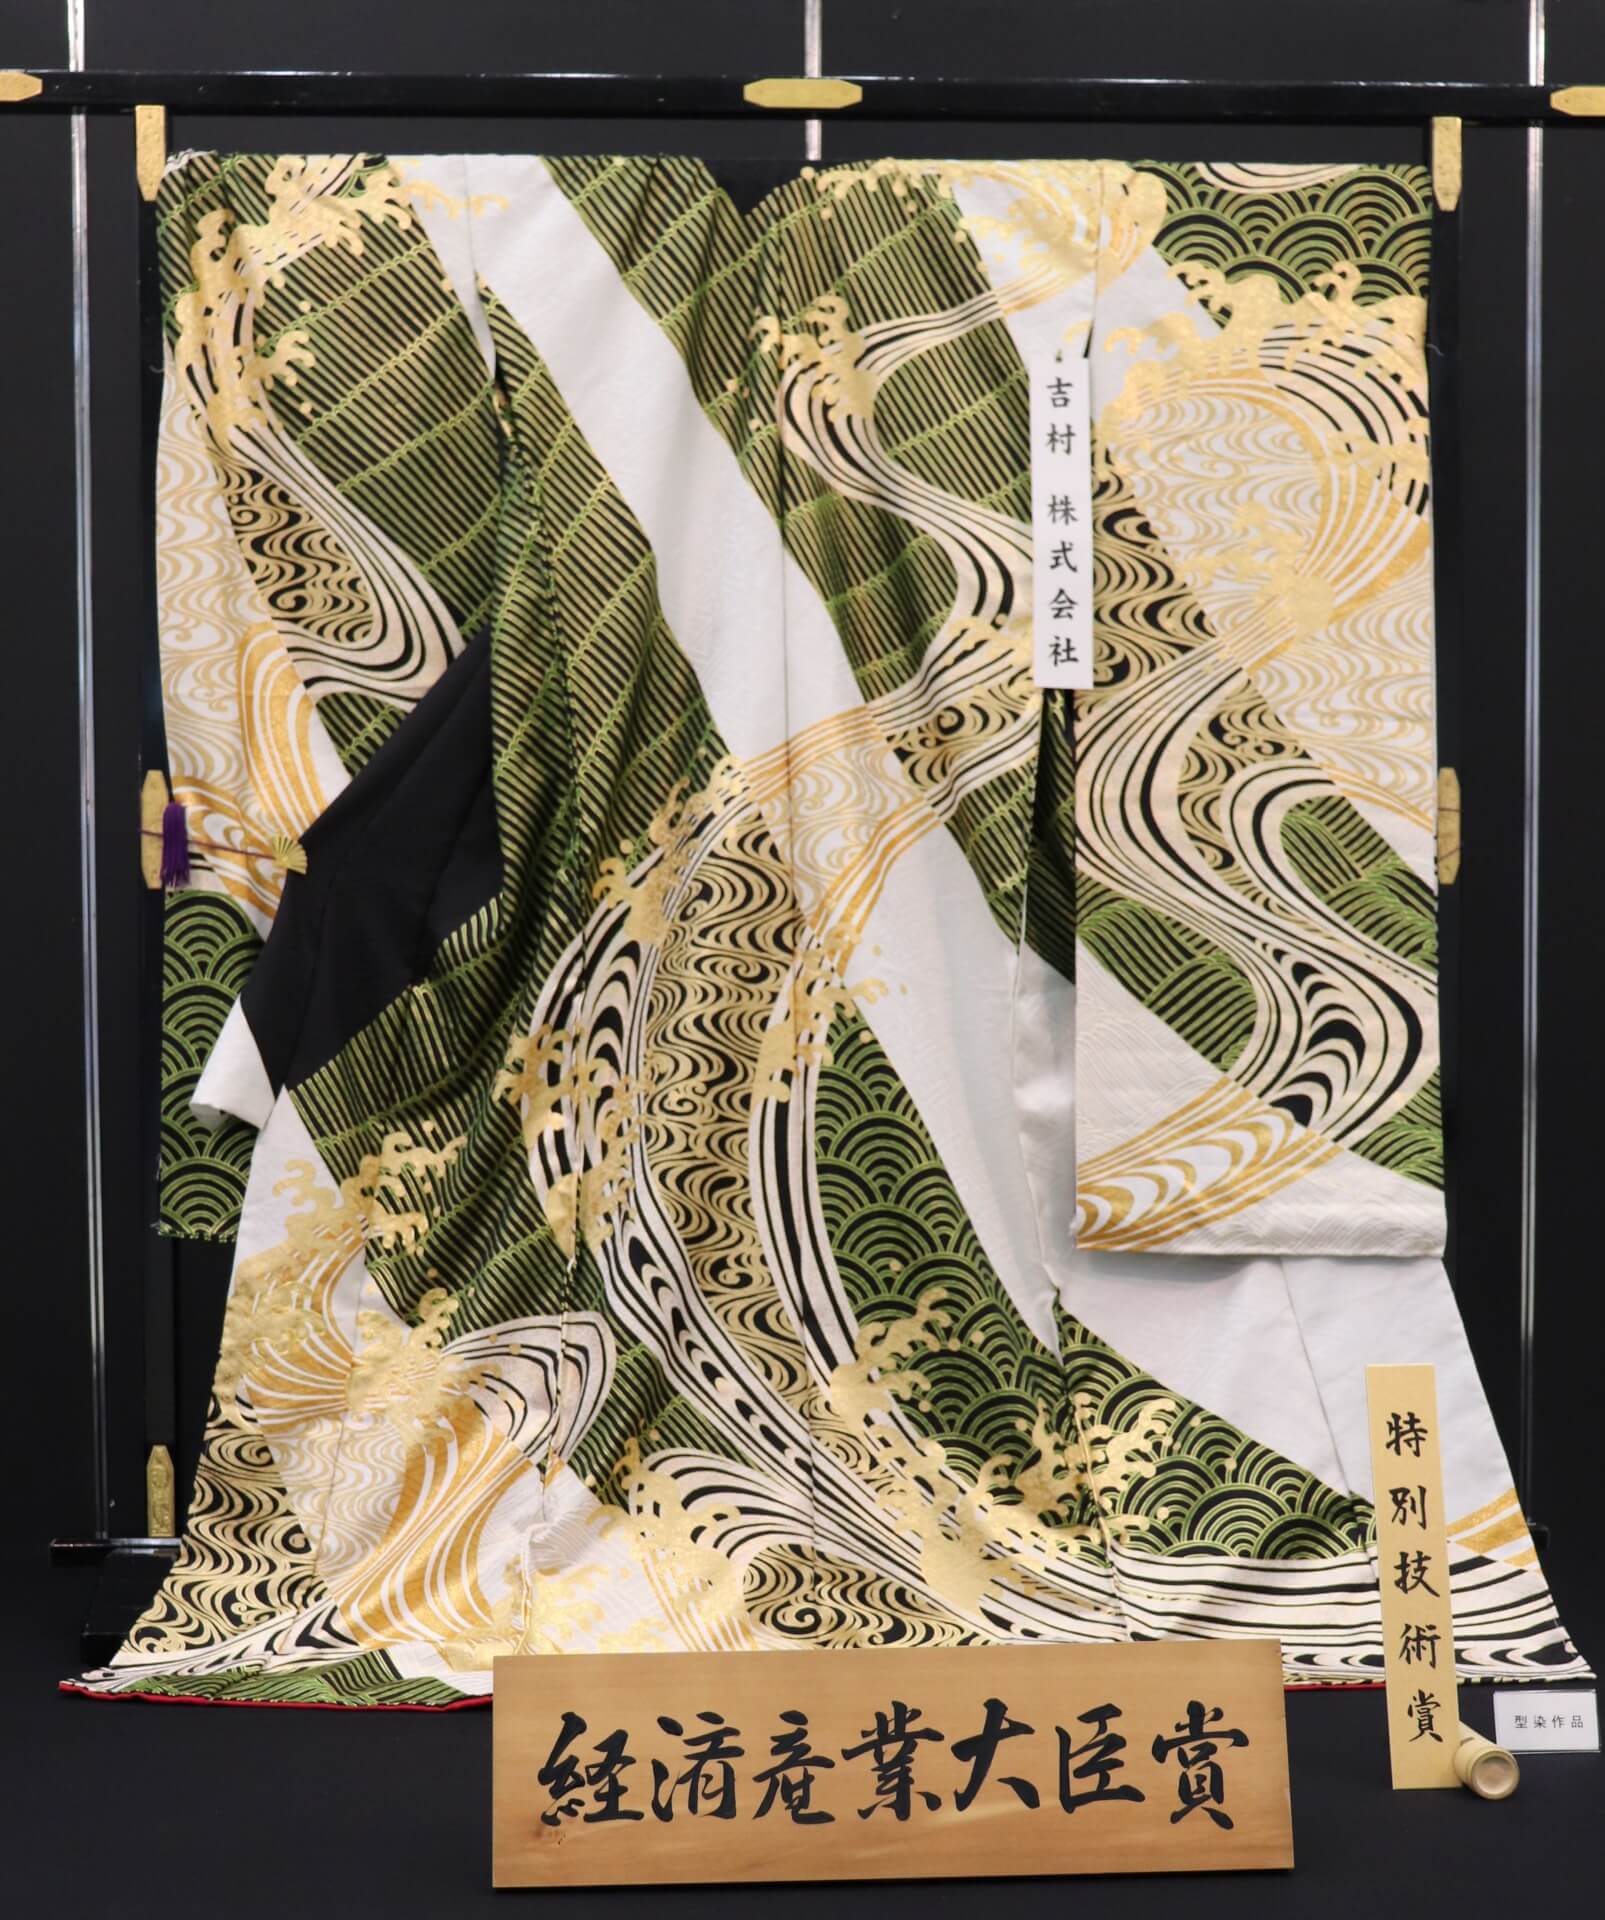 今季も再入荷 新品 最高級正絹産着 祝着 特選京友禅手描き美術特選染